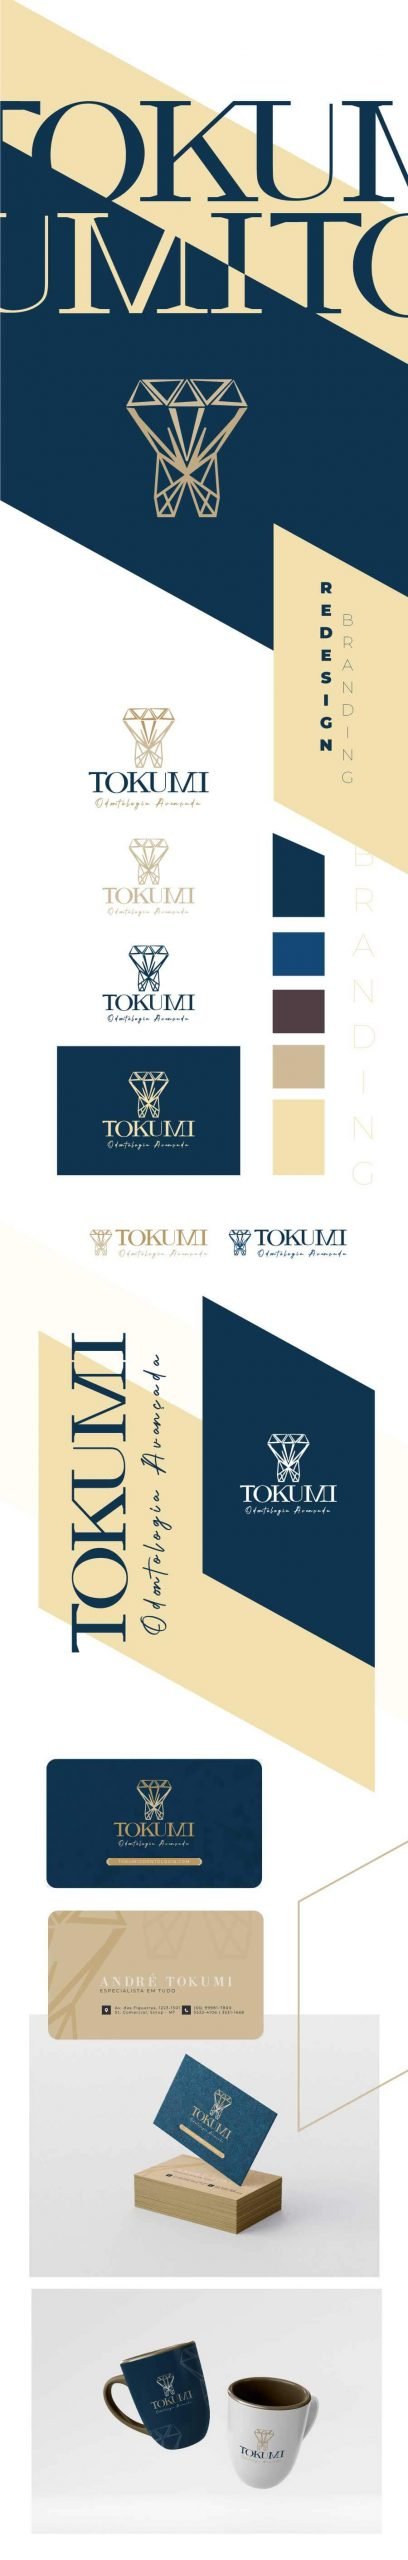 logo new tokumi1 1 scaled